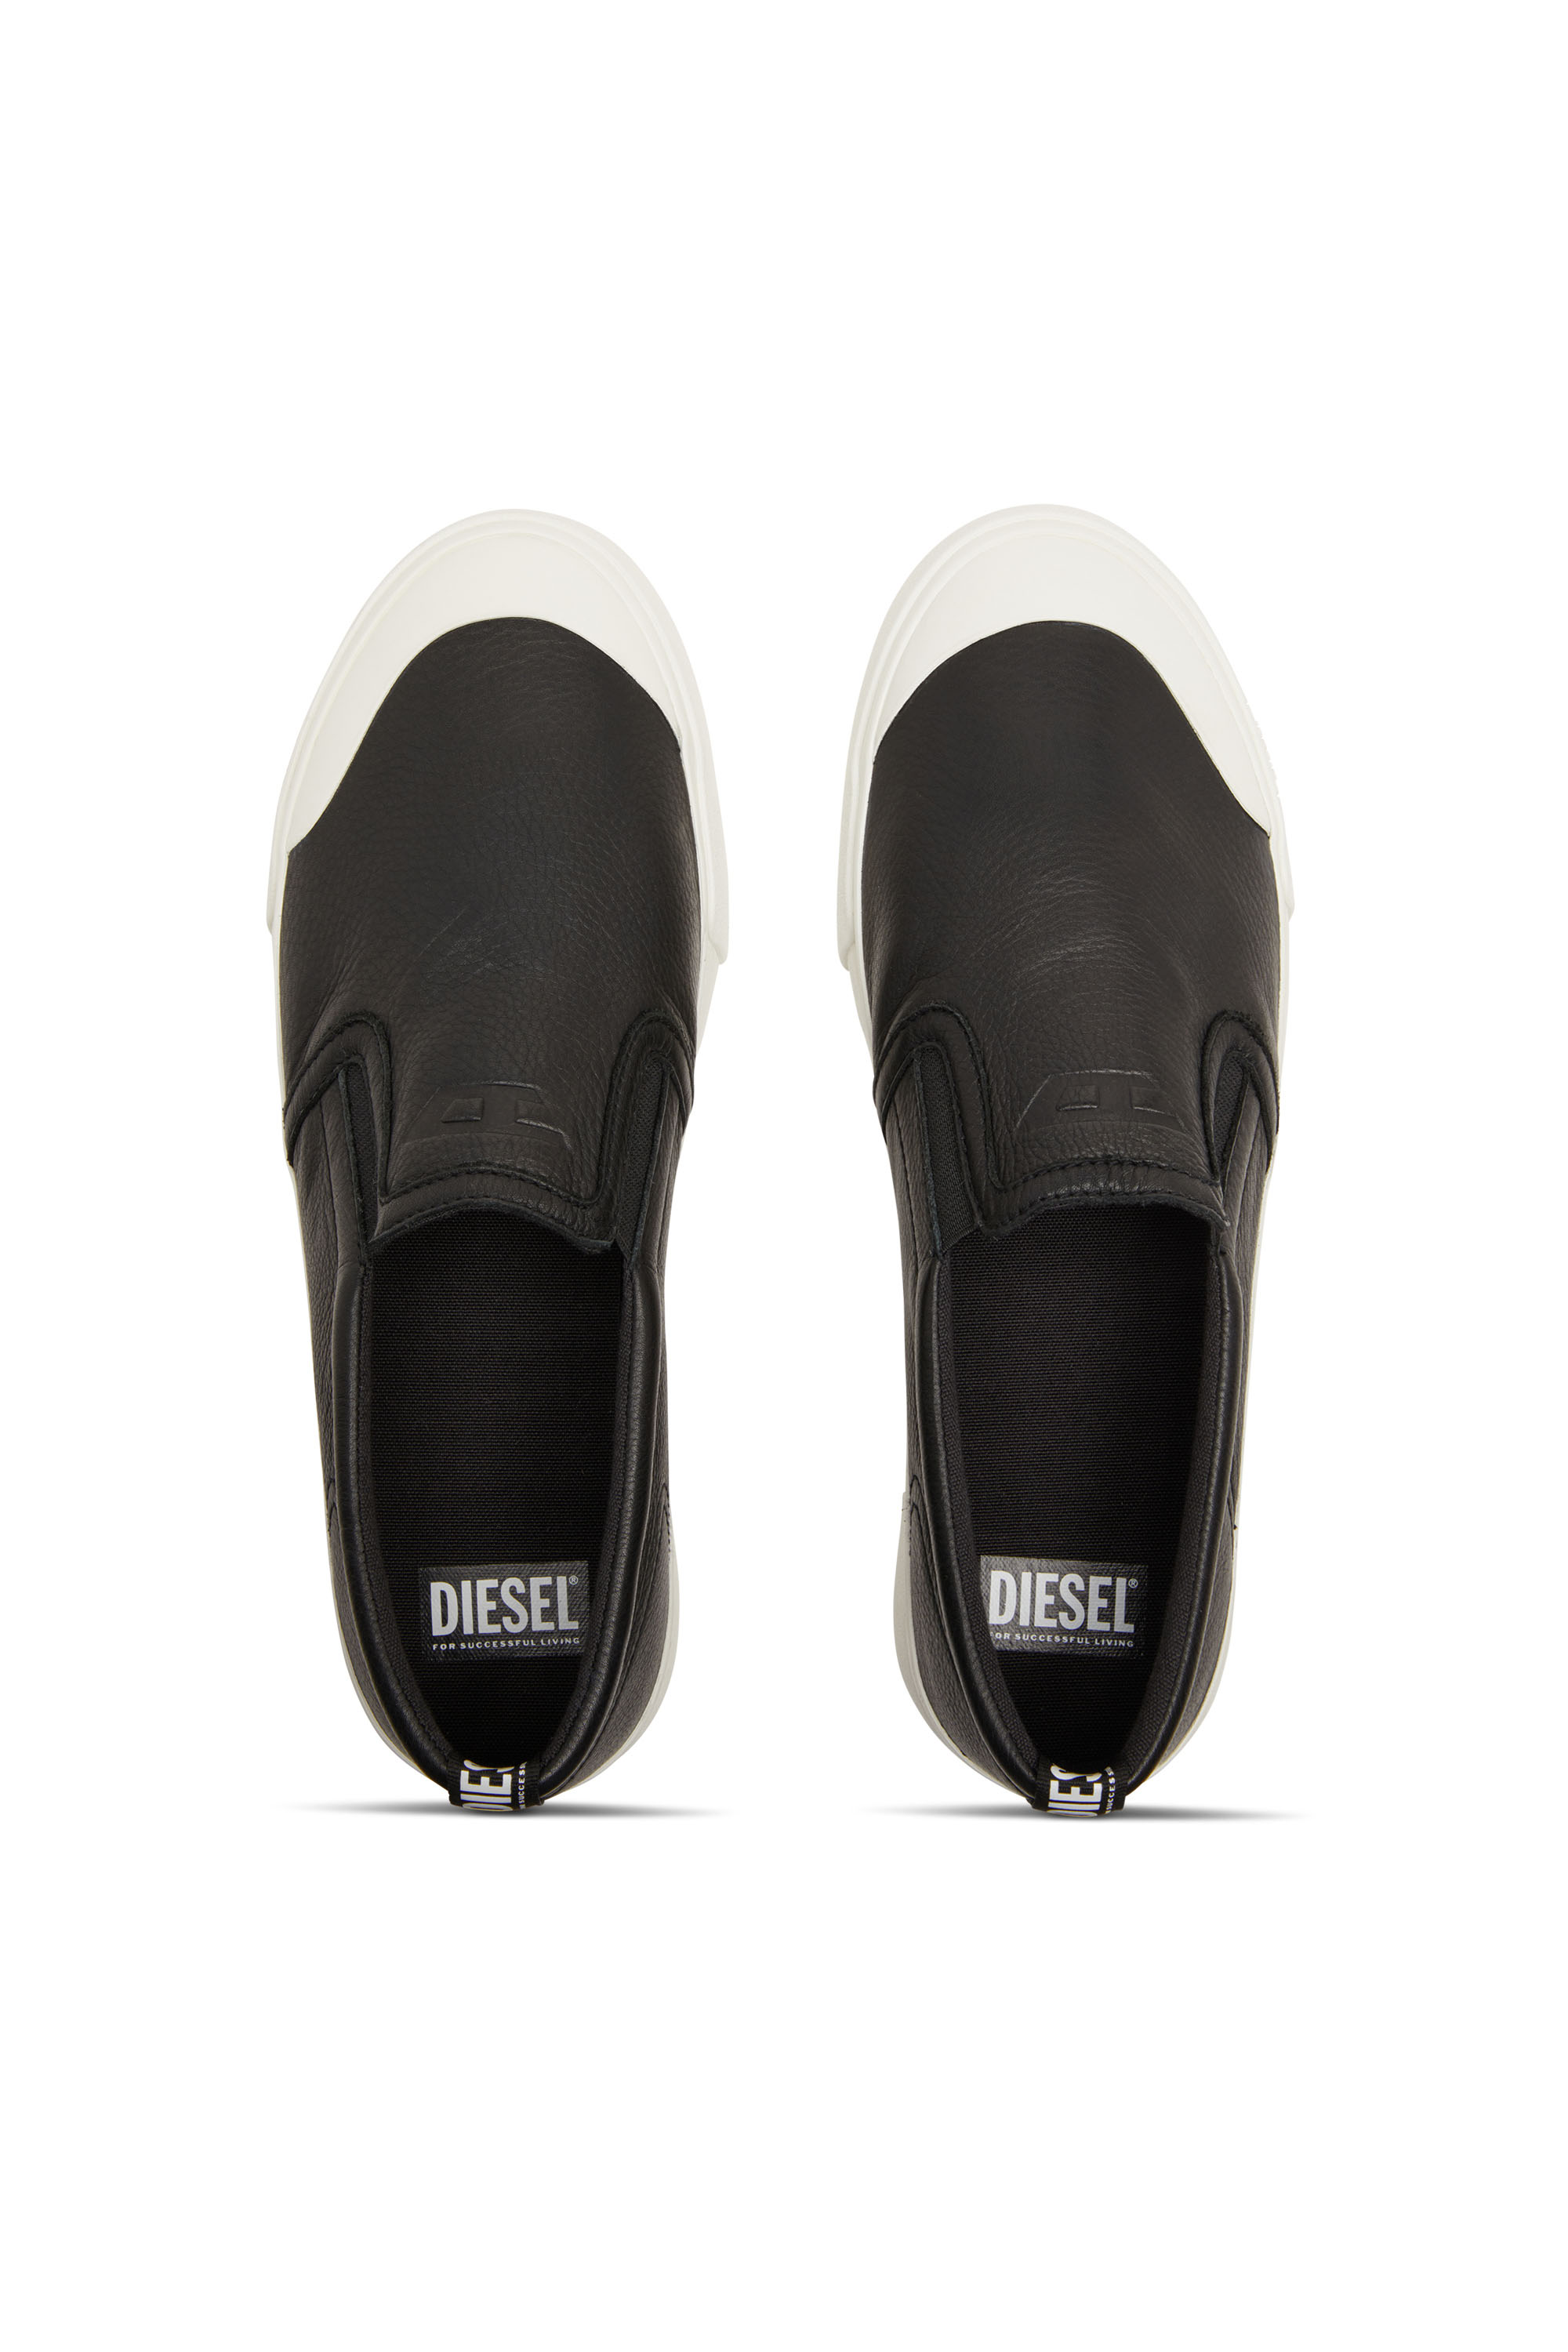 Diesel - S-ATHOS SLIP ON, Man S-Athos-Slip-on sneakers in plain leather in Black - Image 5